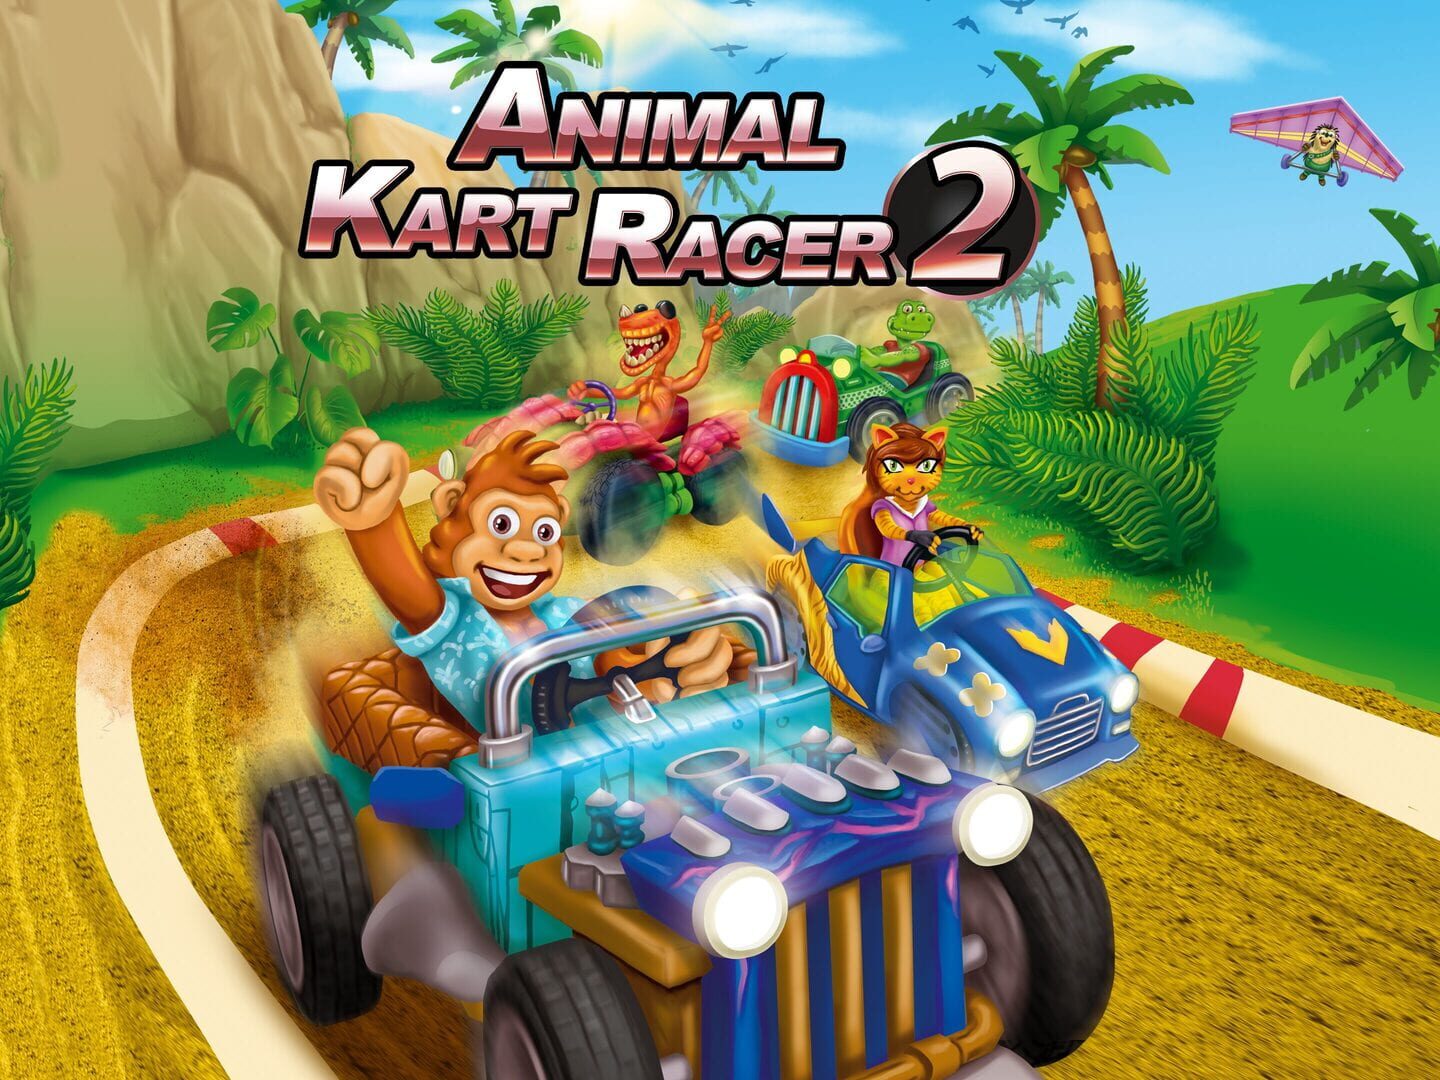 Animal Kart Racer 2 artwork